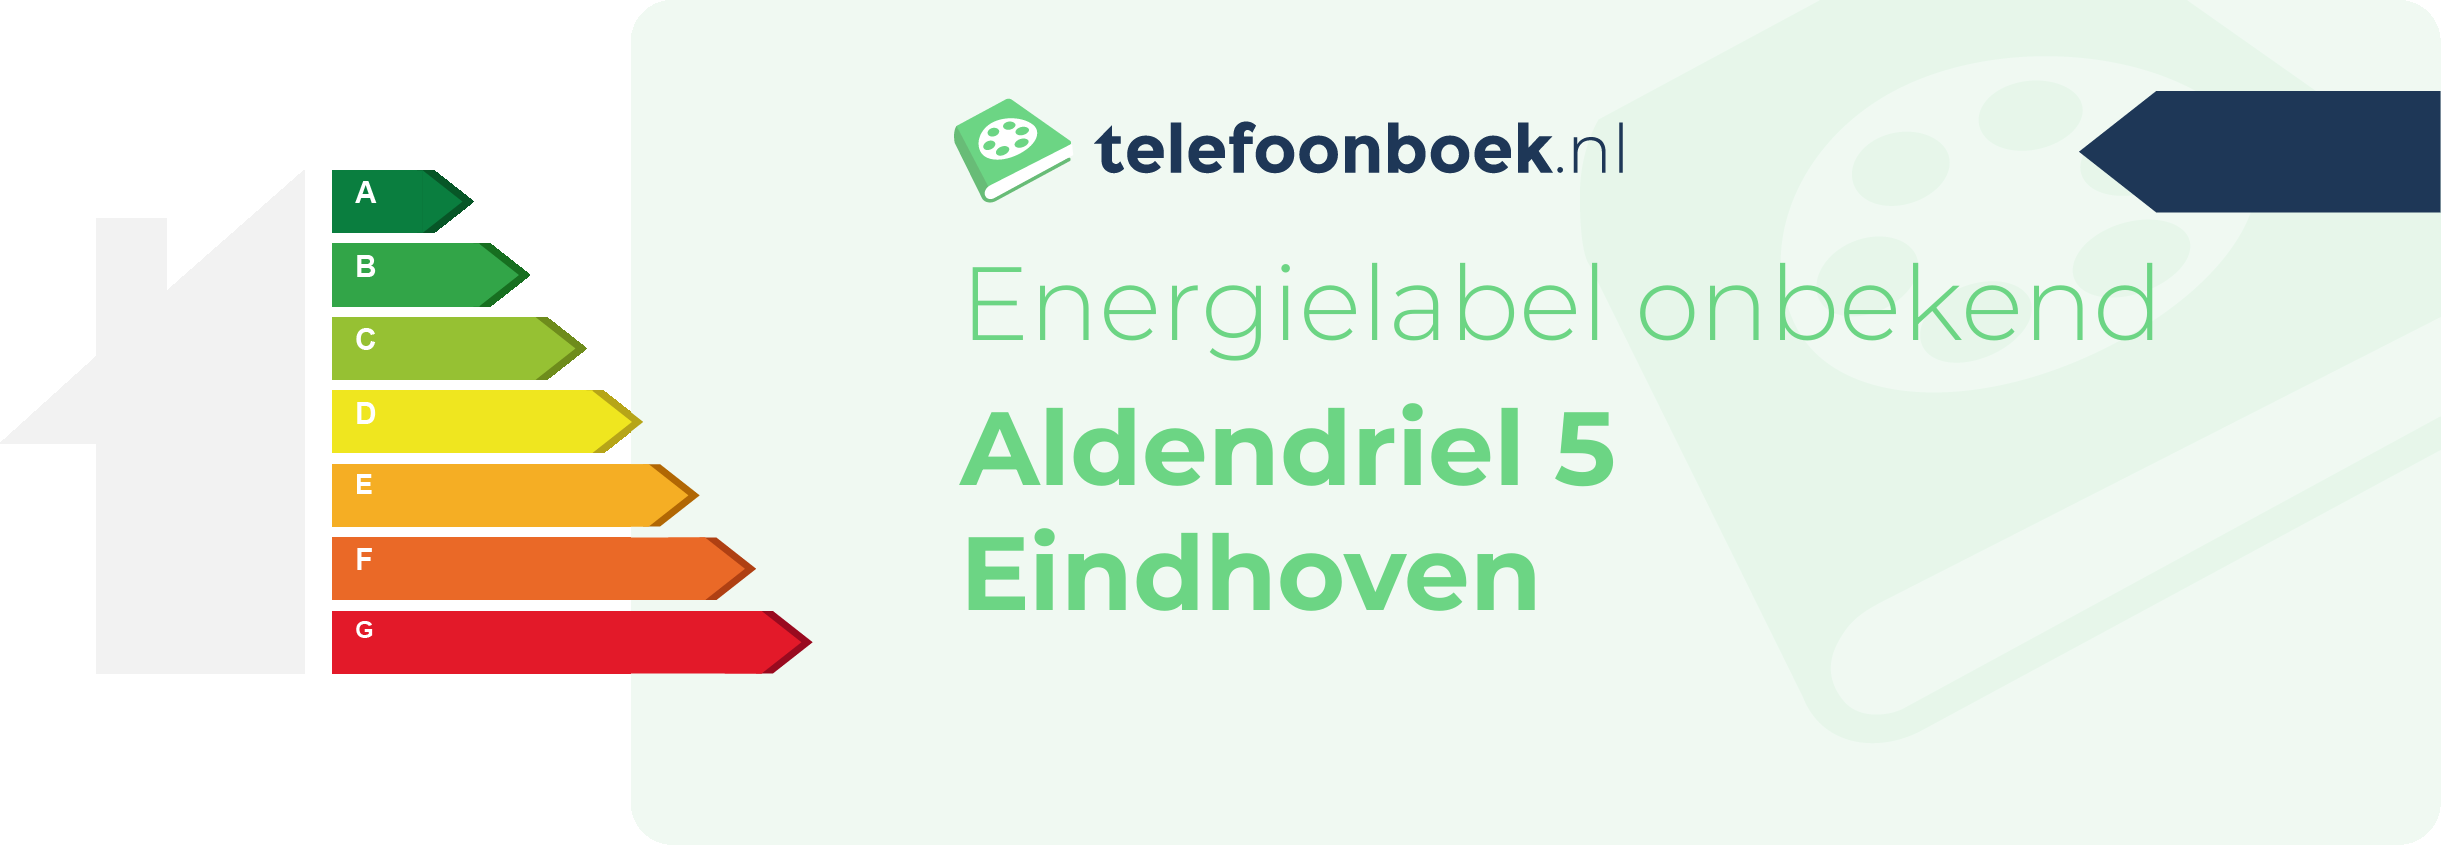 Energielabel Aldendriel 5 Eindhoven